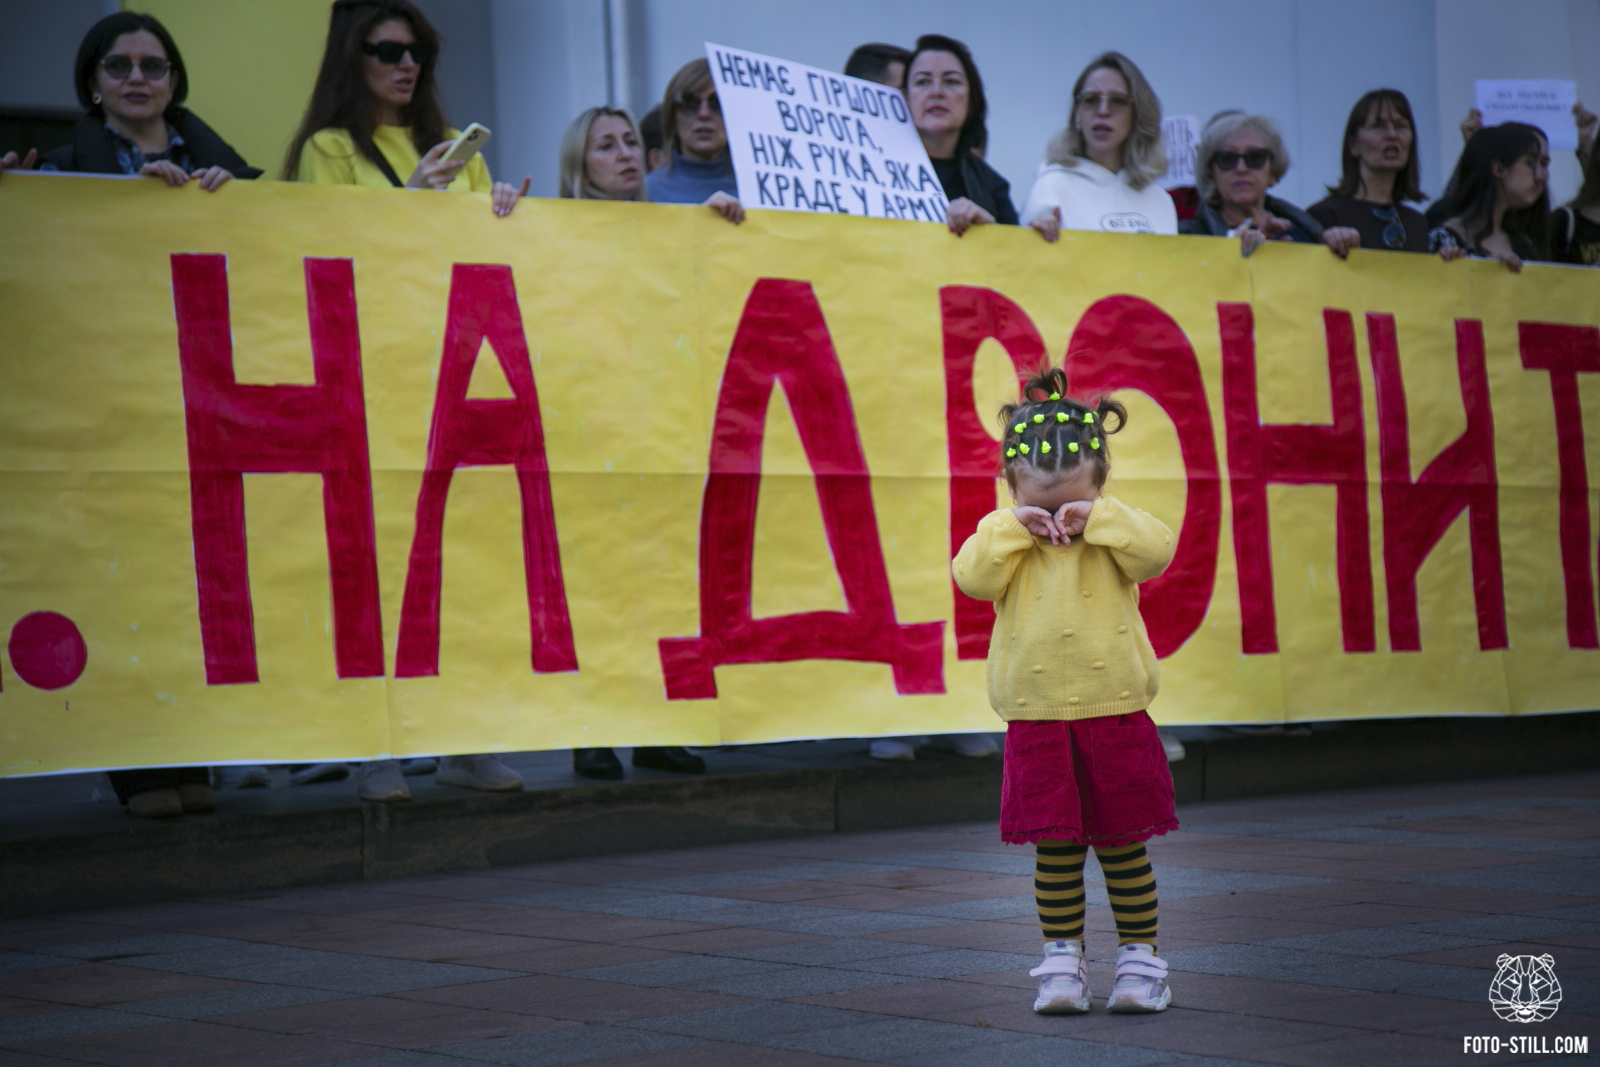 Одеські акції протесту